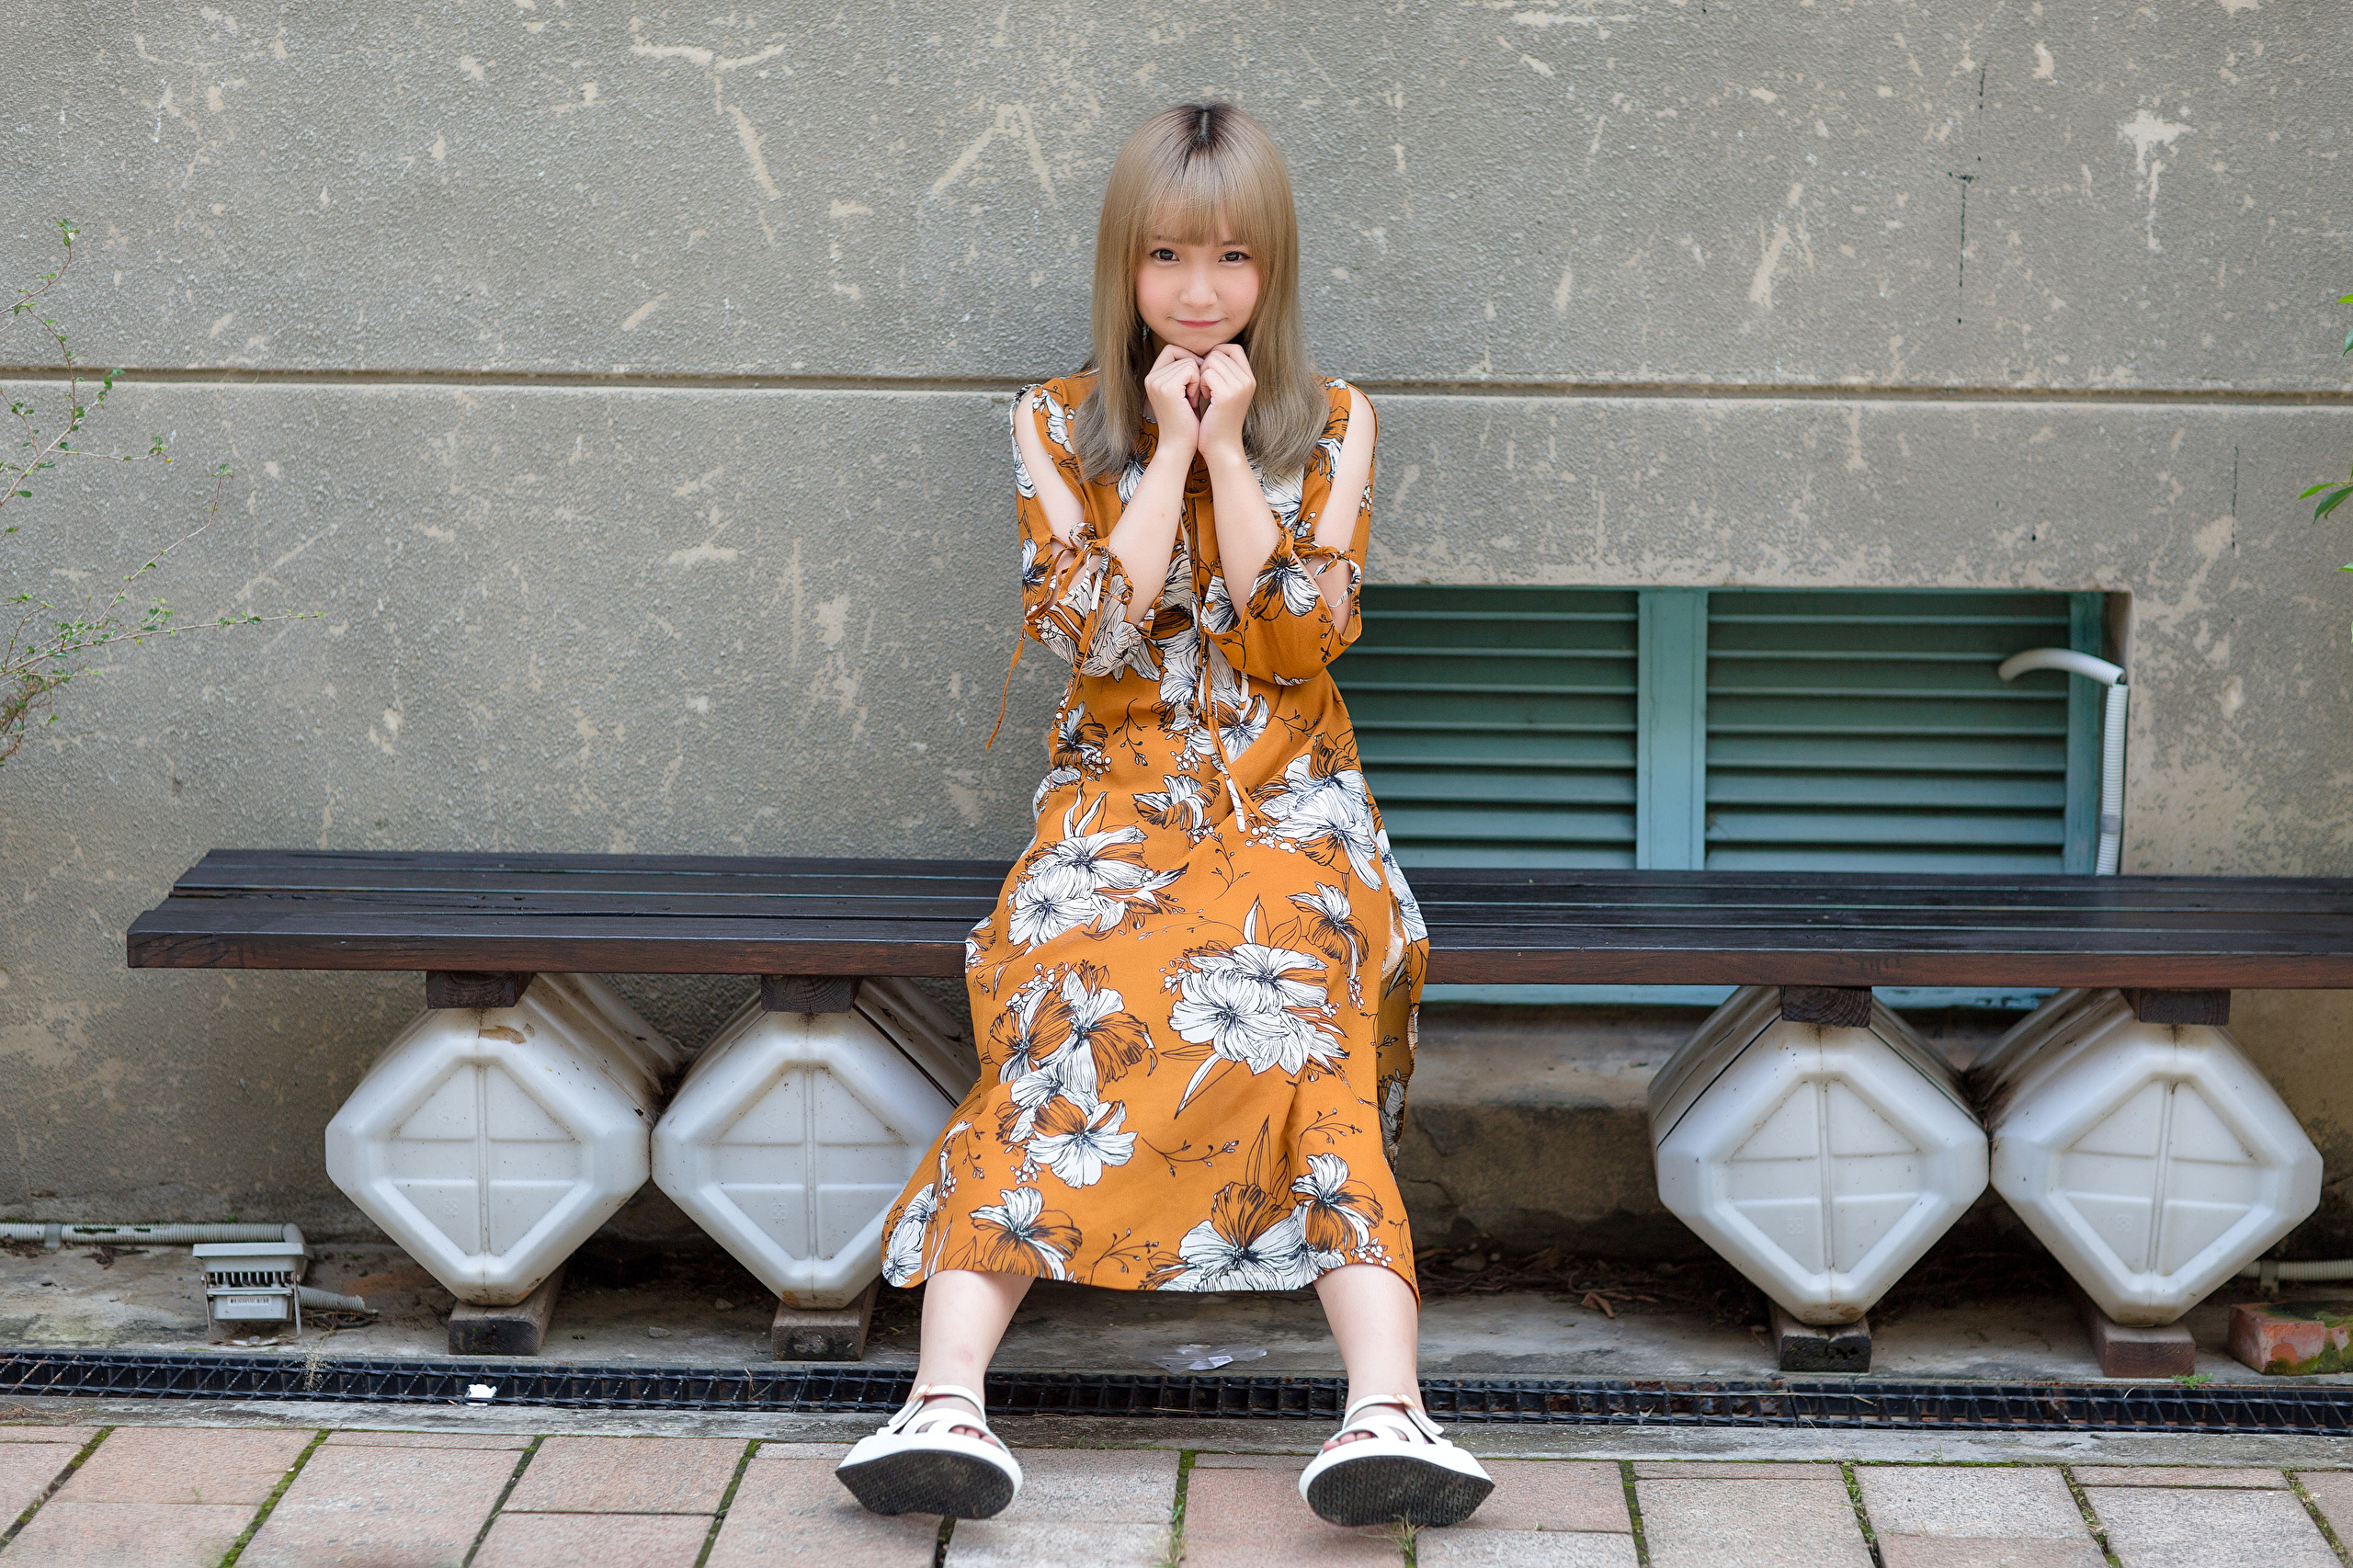 Asian Model Women Long Hair Brunette Flower Dress Sitting Bench Barefoot Sandal Wall Drains 2560x1706